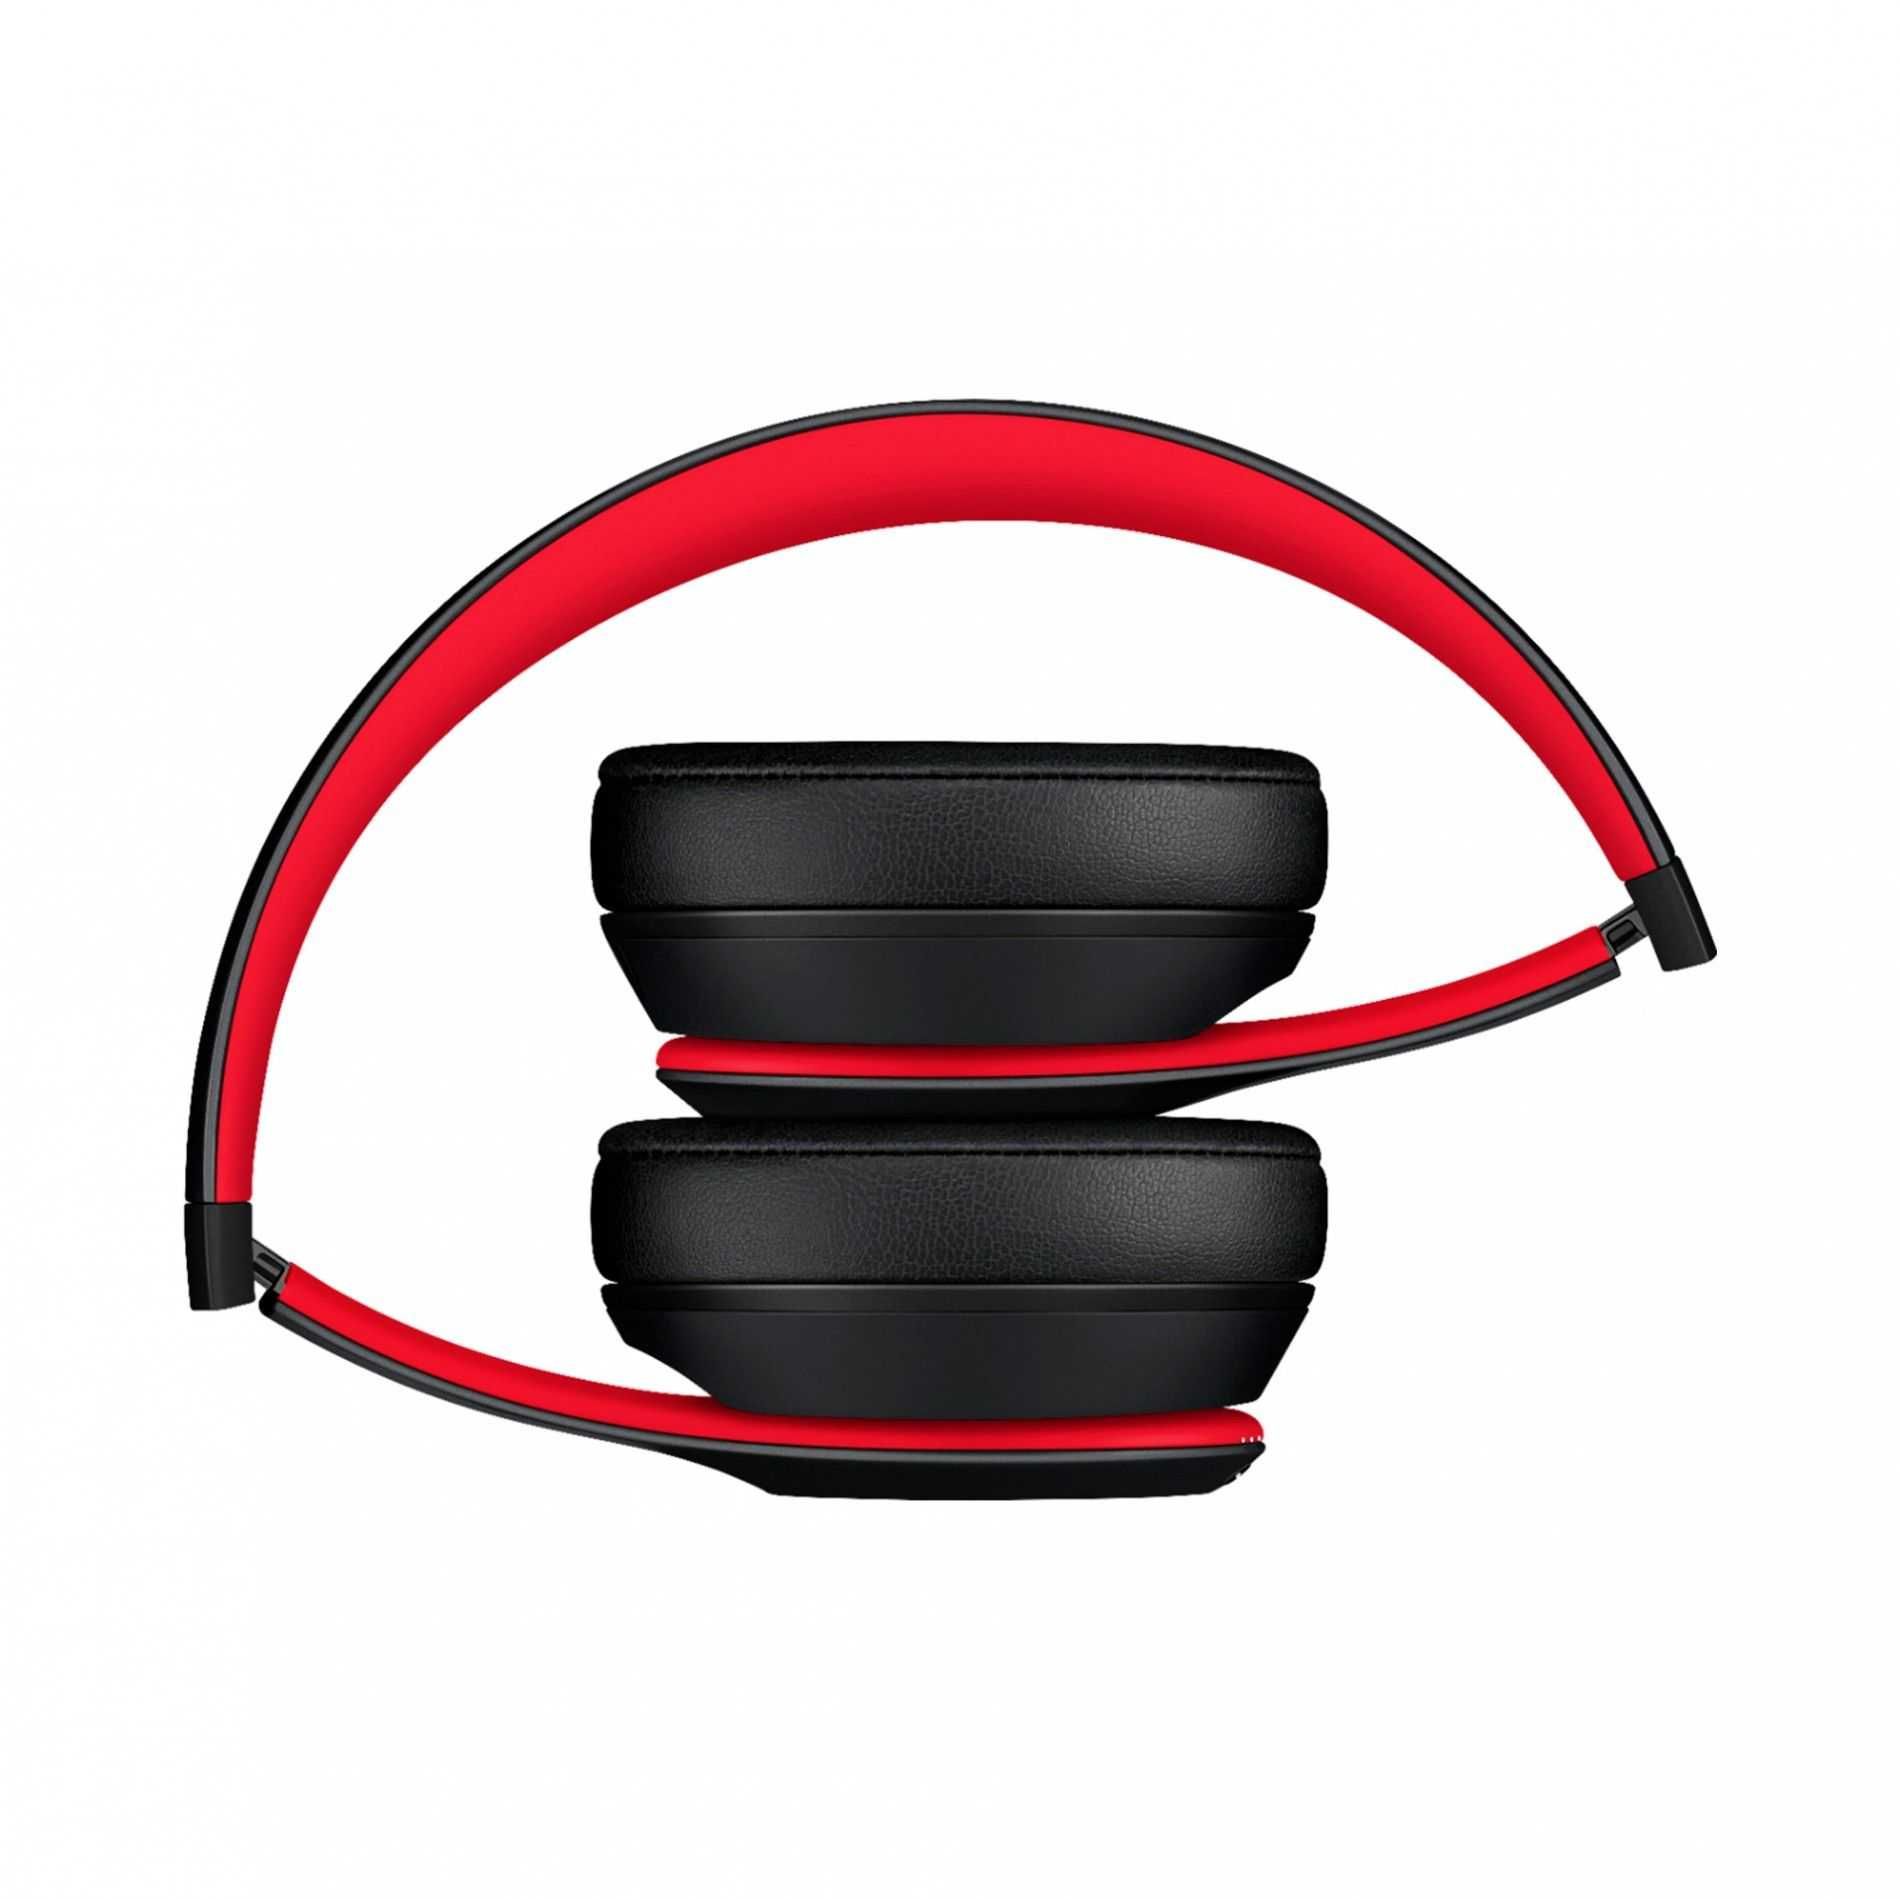 Auscultador Wireless Beats Studio 3 Preto e Vermelho A++ Garantia